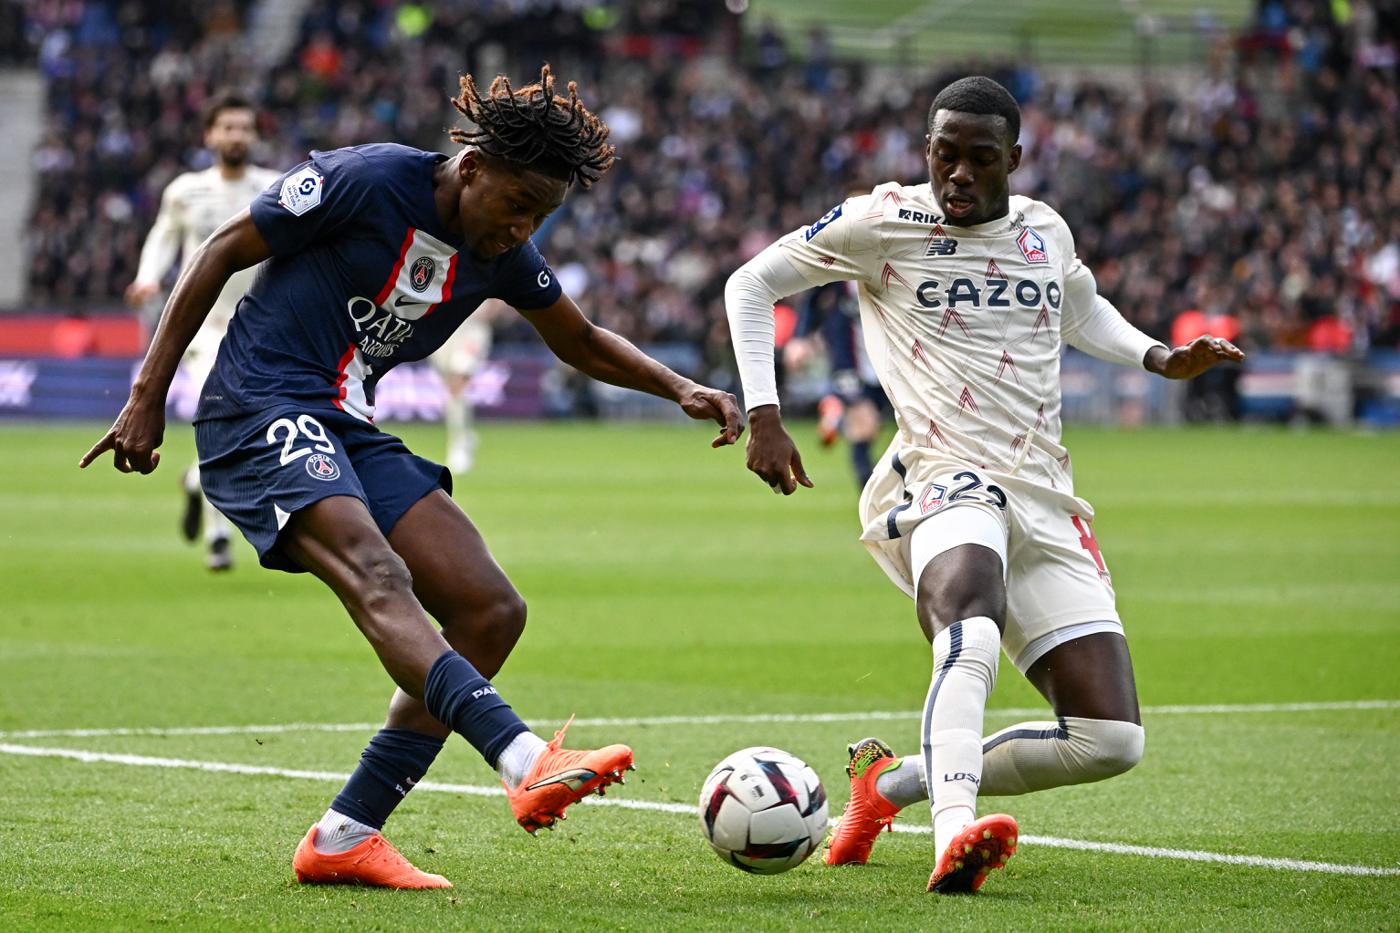 PSG - Lille - 4:3. Mistrzostwa Francji, 24. runda. Przegląd meczu, statystyki